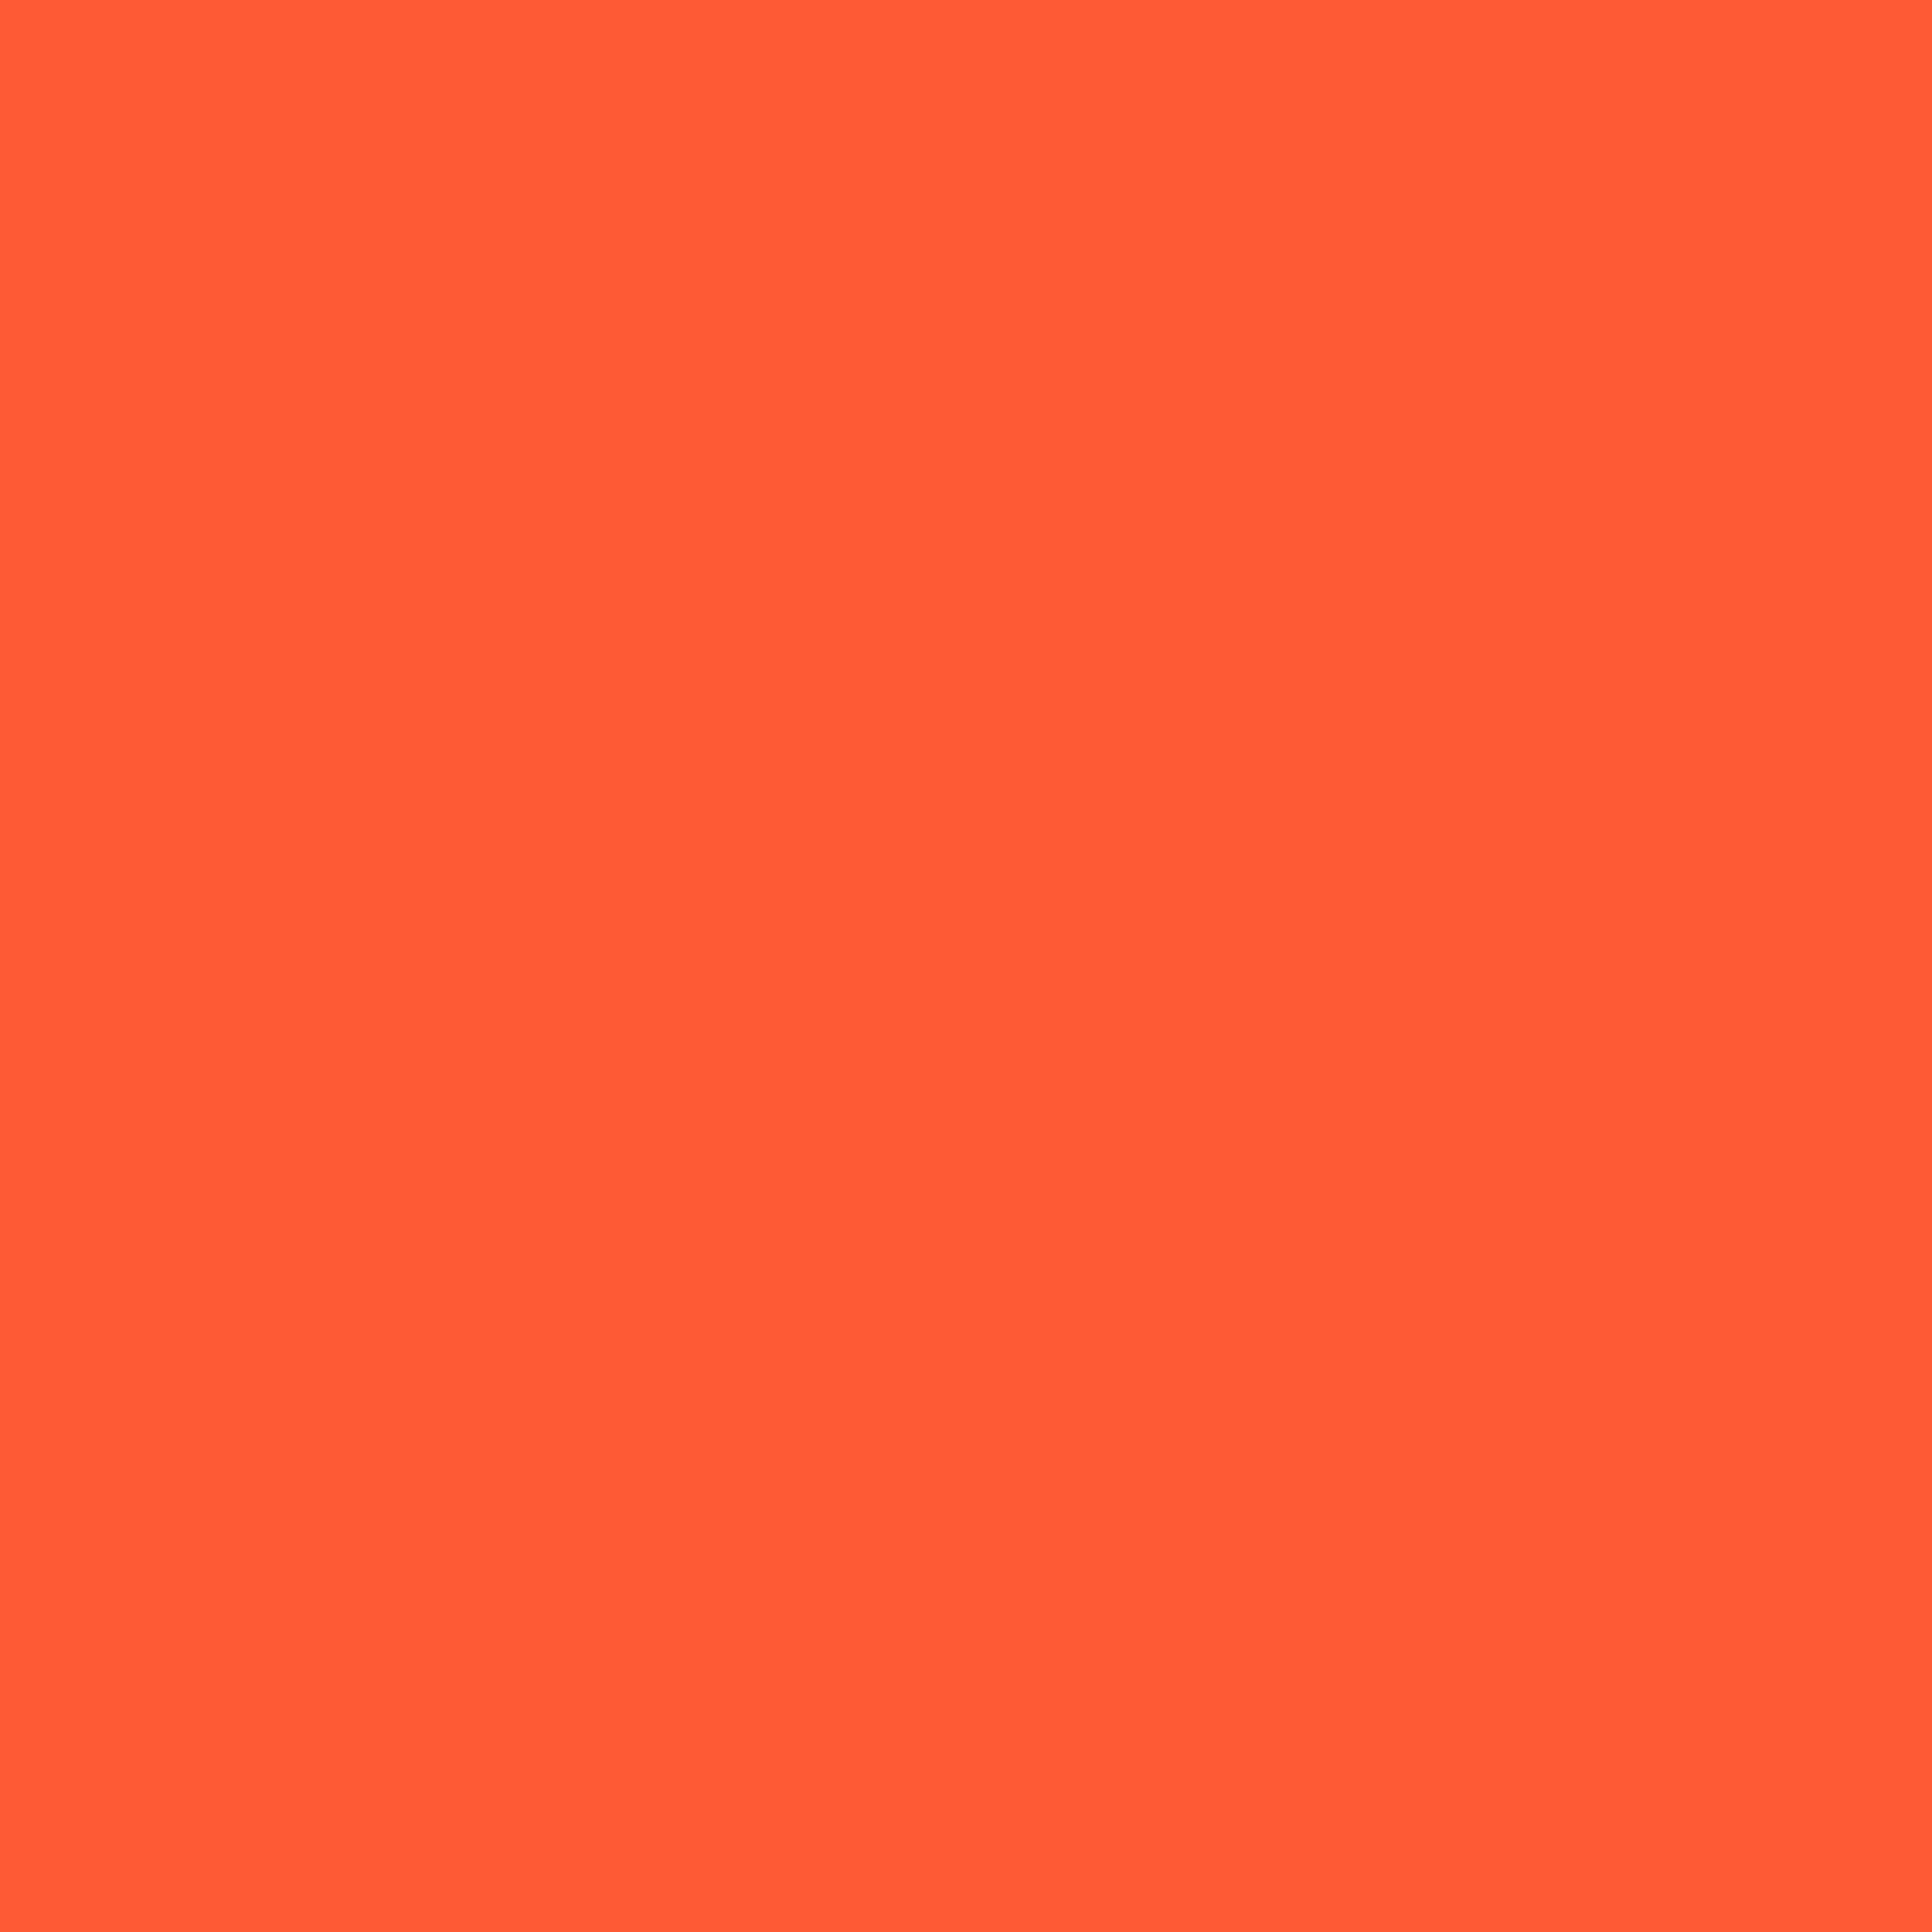 3600x3600 Portland Orange Solid Color Background